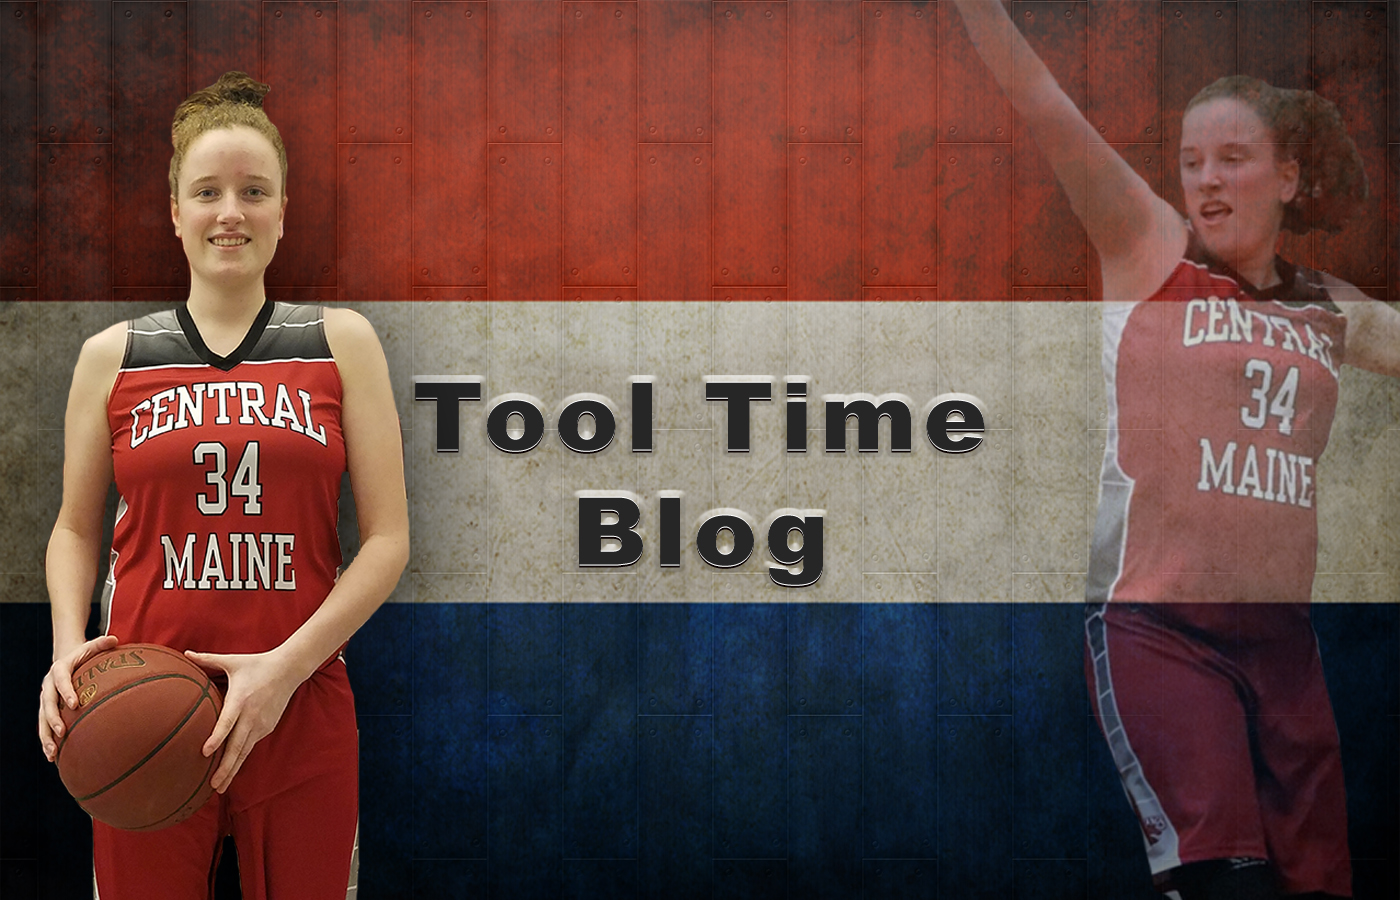 Tool Time Blog - 6/18/2019